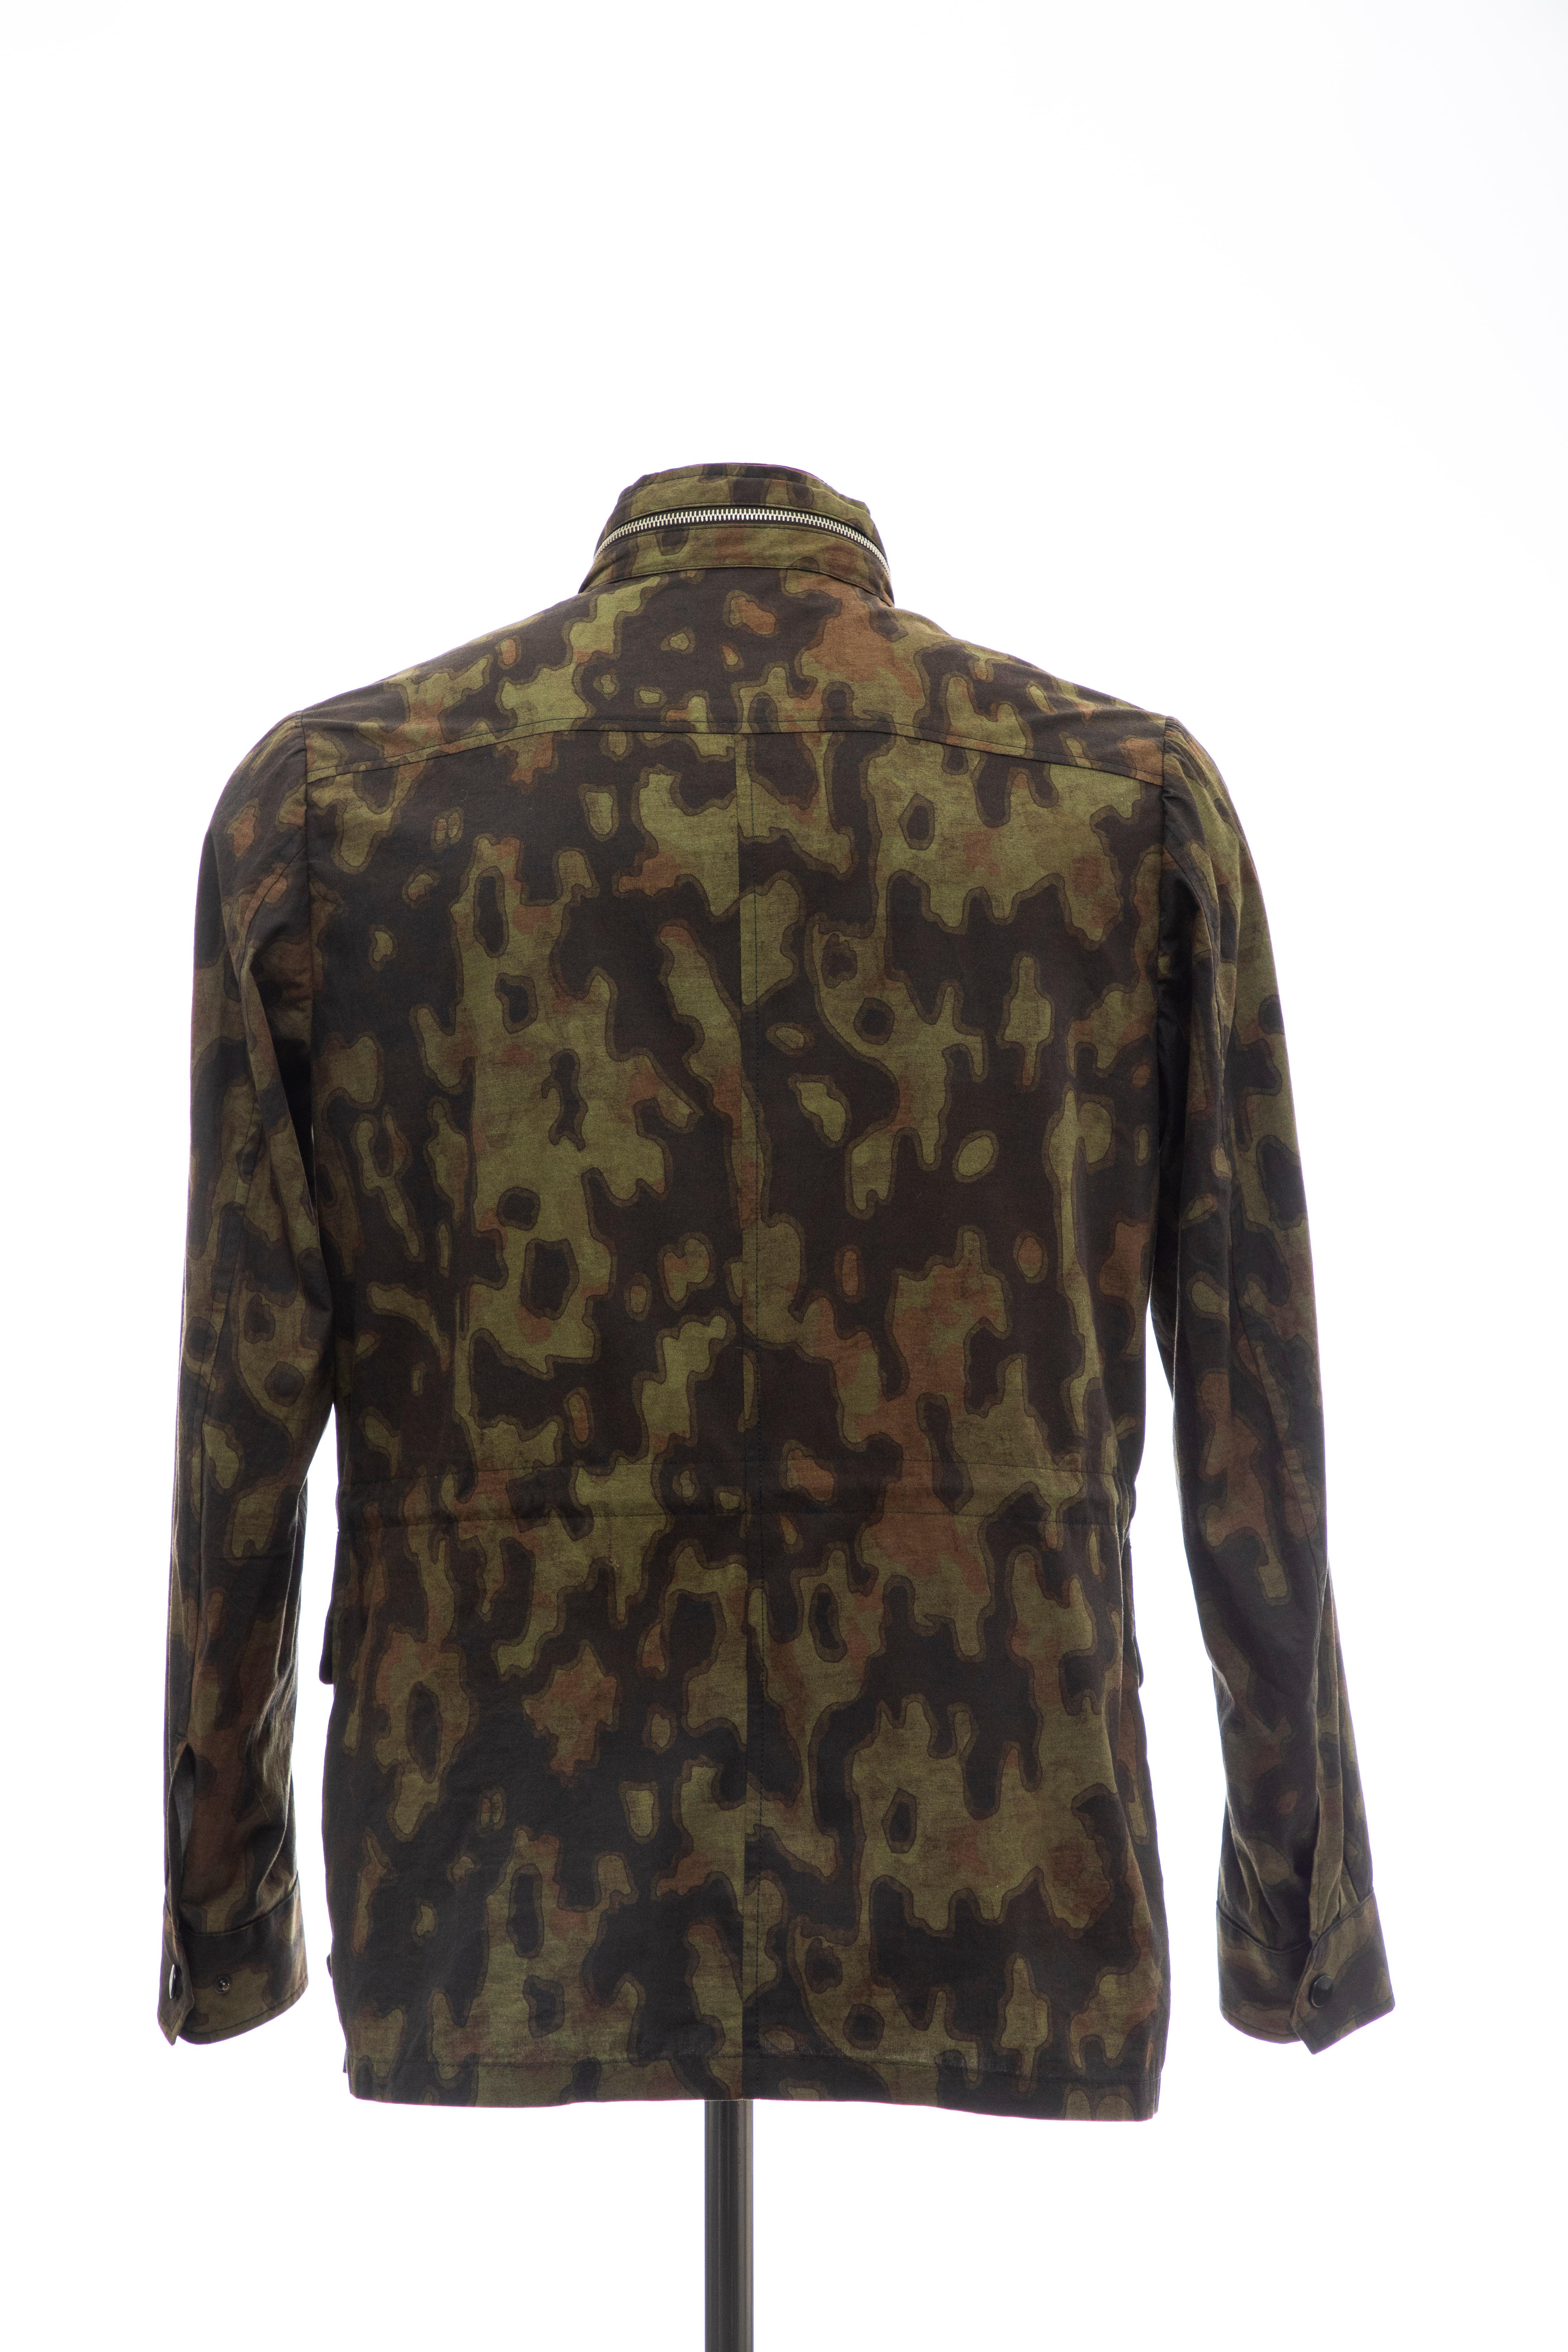 Dries Van Noten Men's Cotton Camouflage Jacket, Spring 2013 In Excellent Condition For Sale In Cincinnati, OH